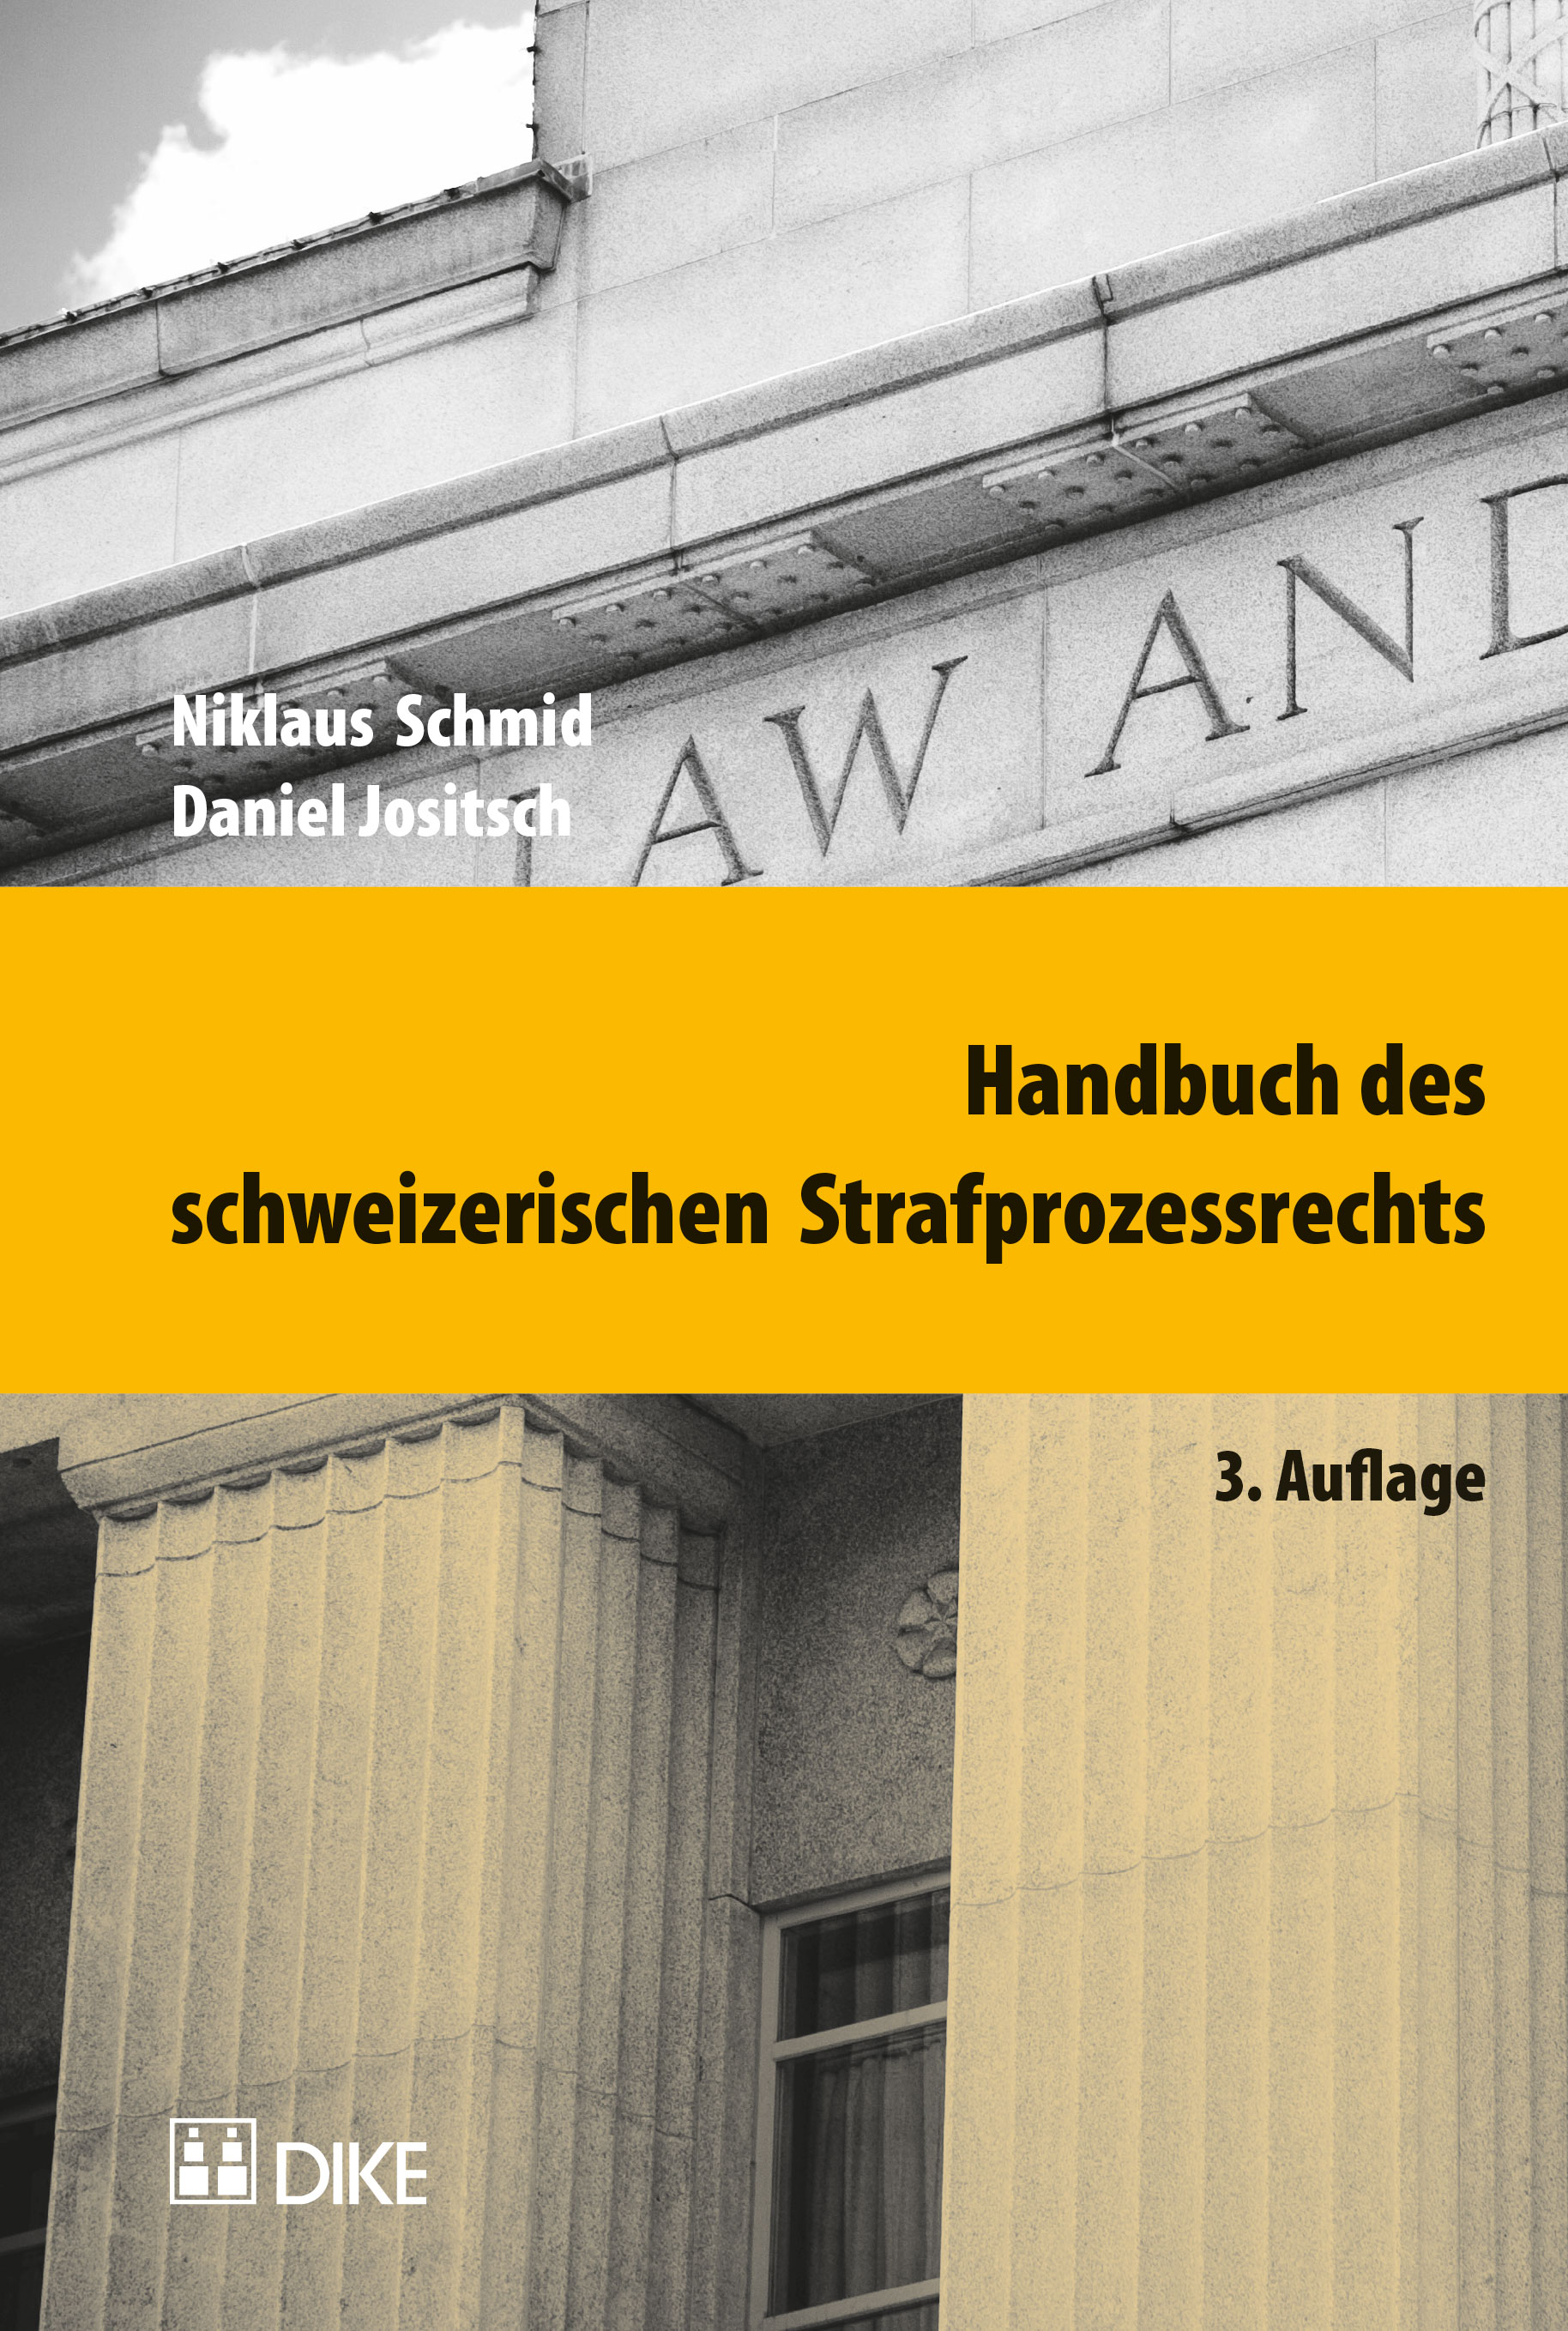 Handbuch des schweizerischen Strafprozessrechts